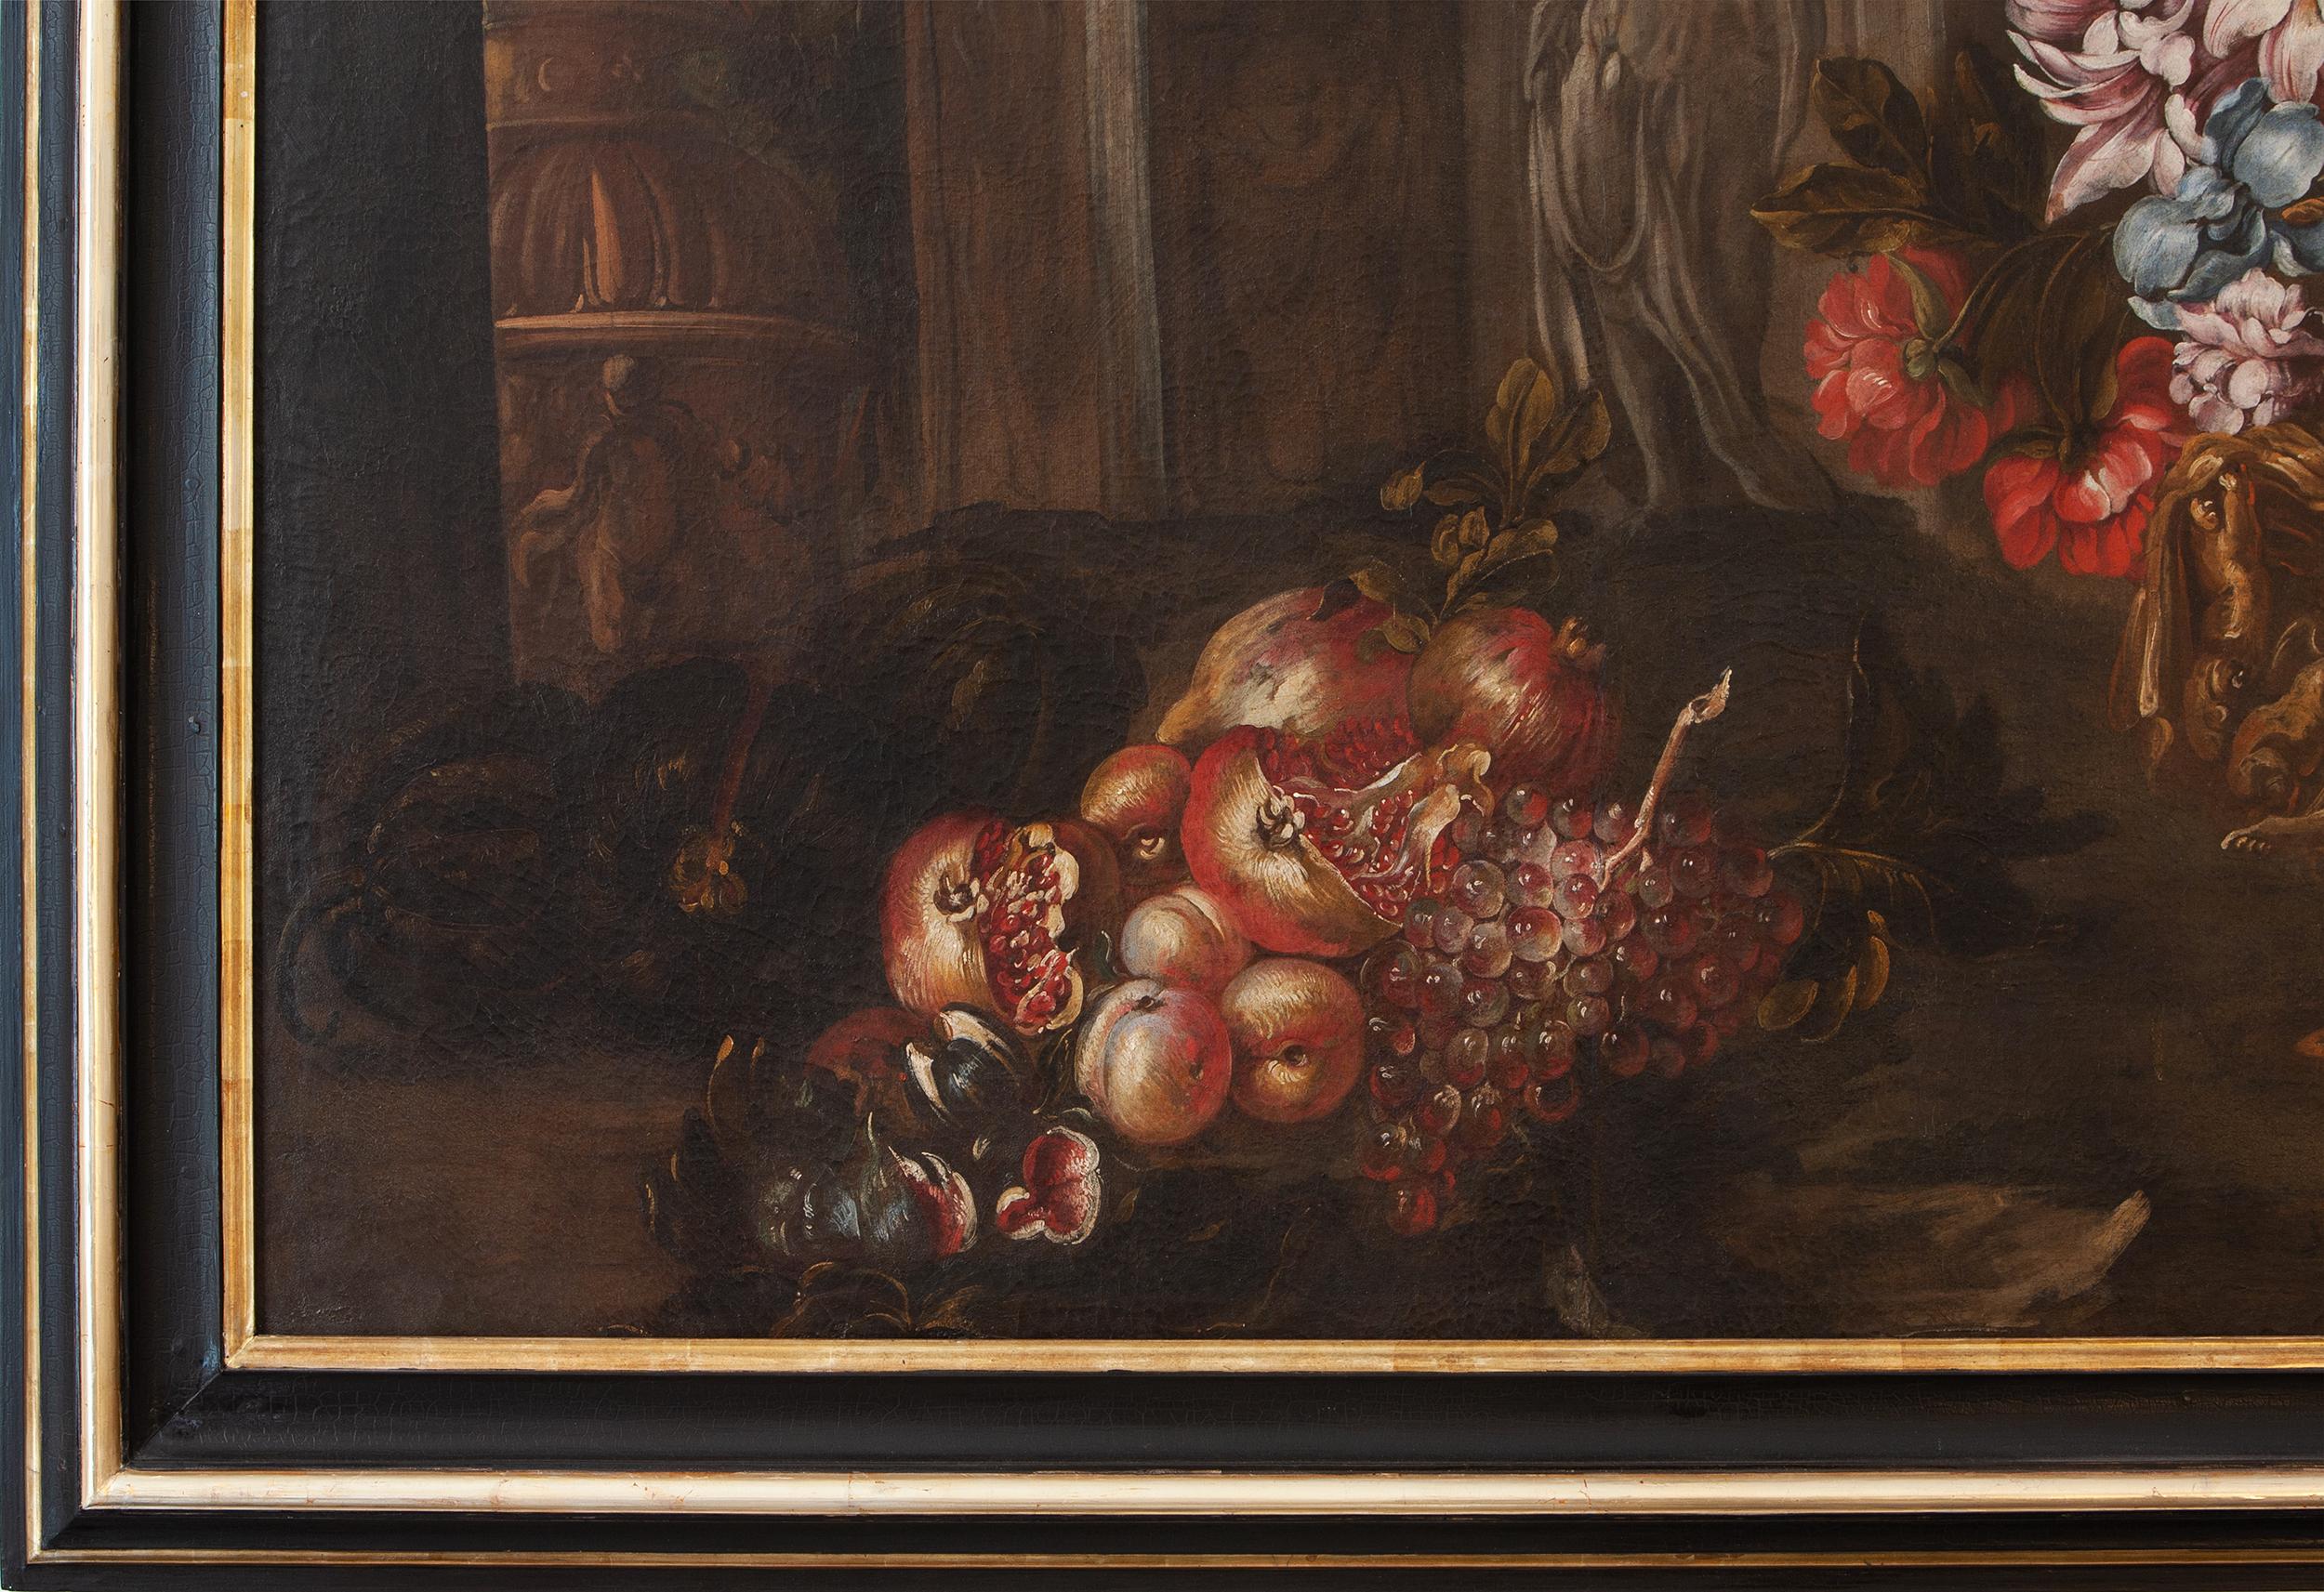 Nature morte avec vase de fleurs, fruits et ruines architecturales  - Black Still-Life Painting par Unknown